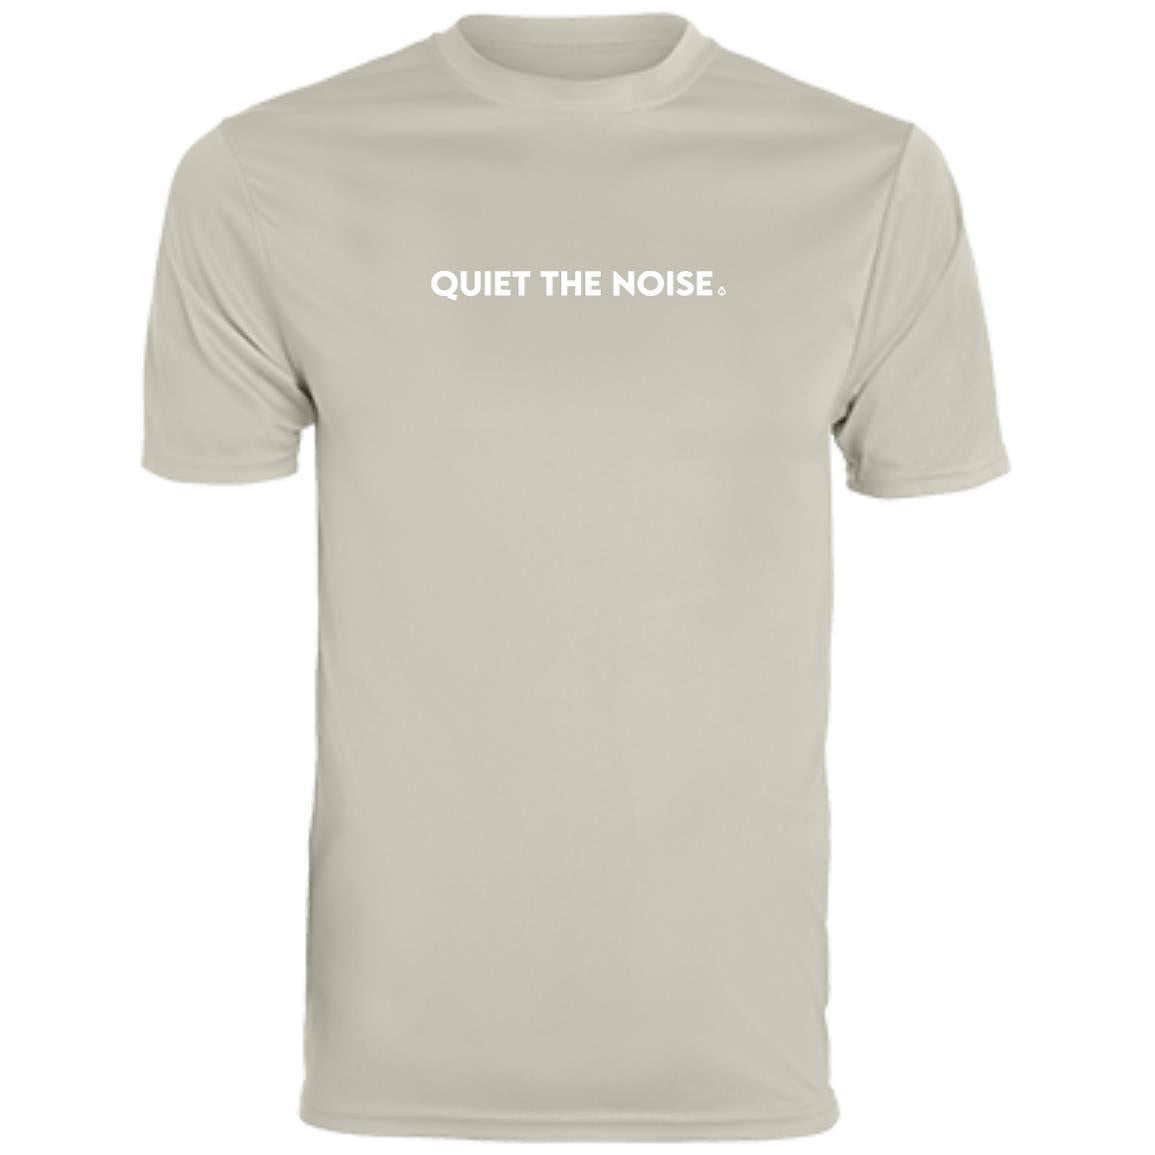 Quiet The Noise Women's Performance T-Shirt